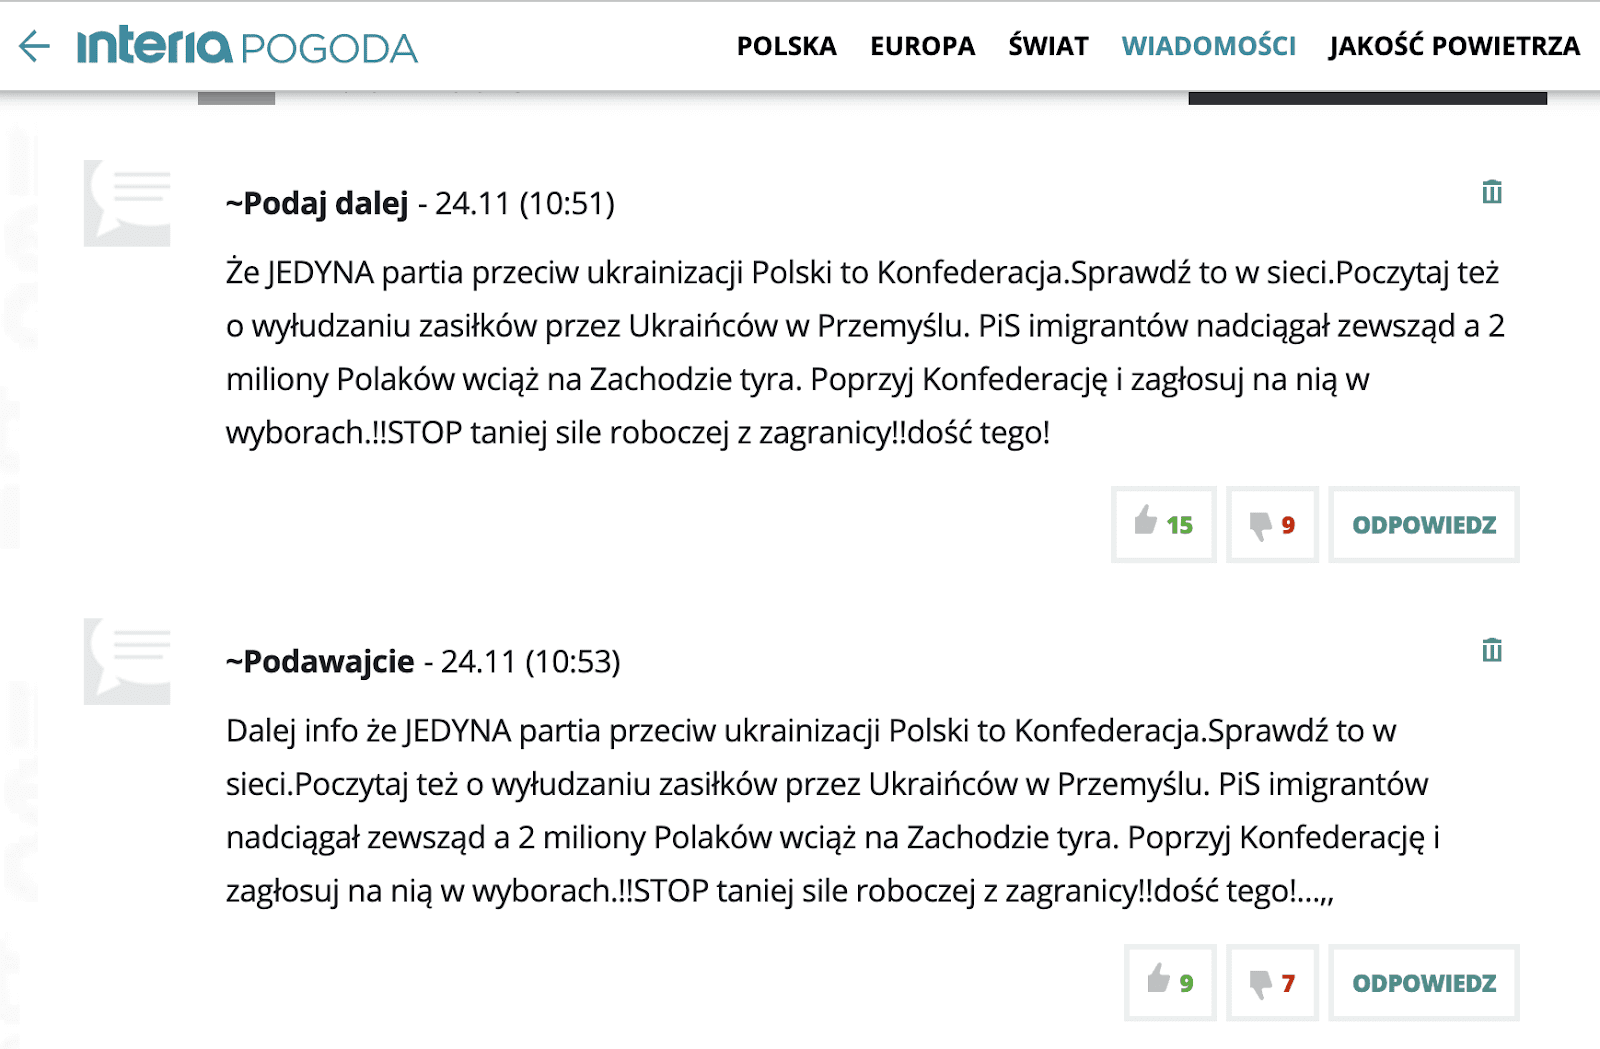 Antyukraiński komentarz w Interia.pl